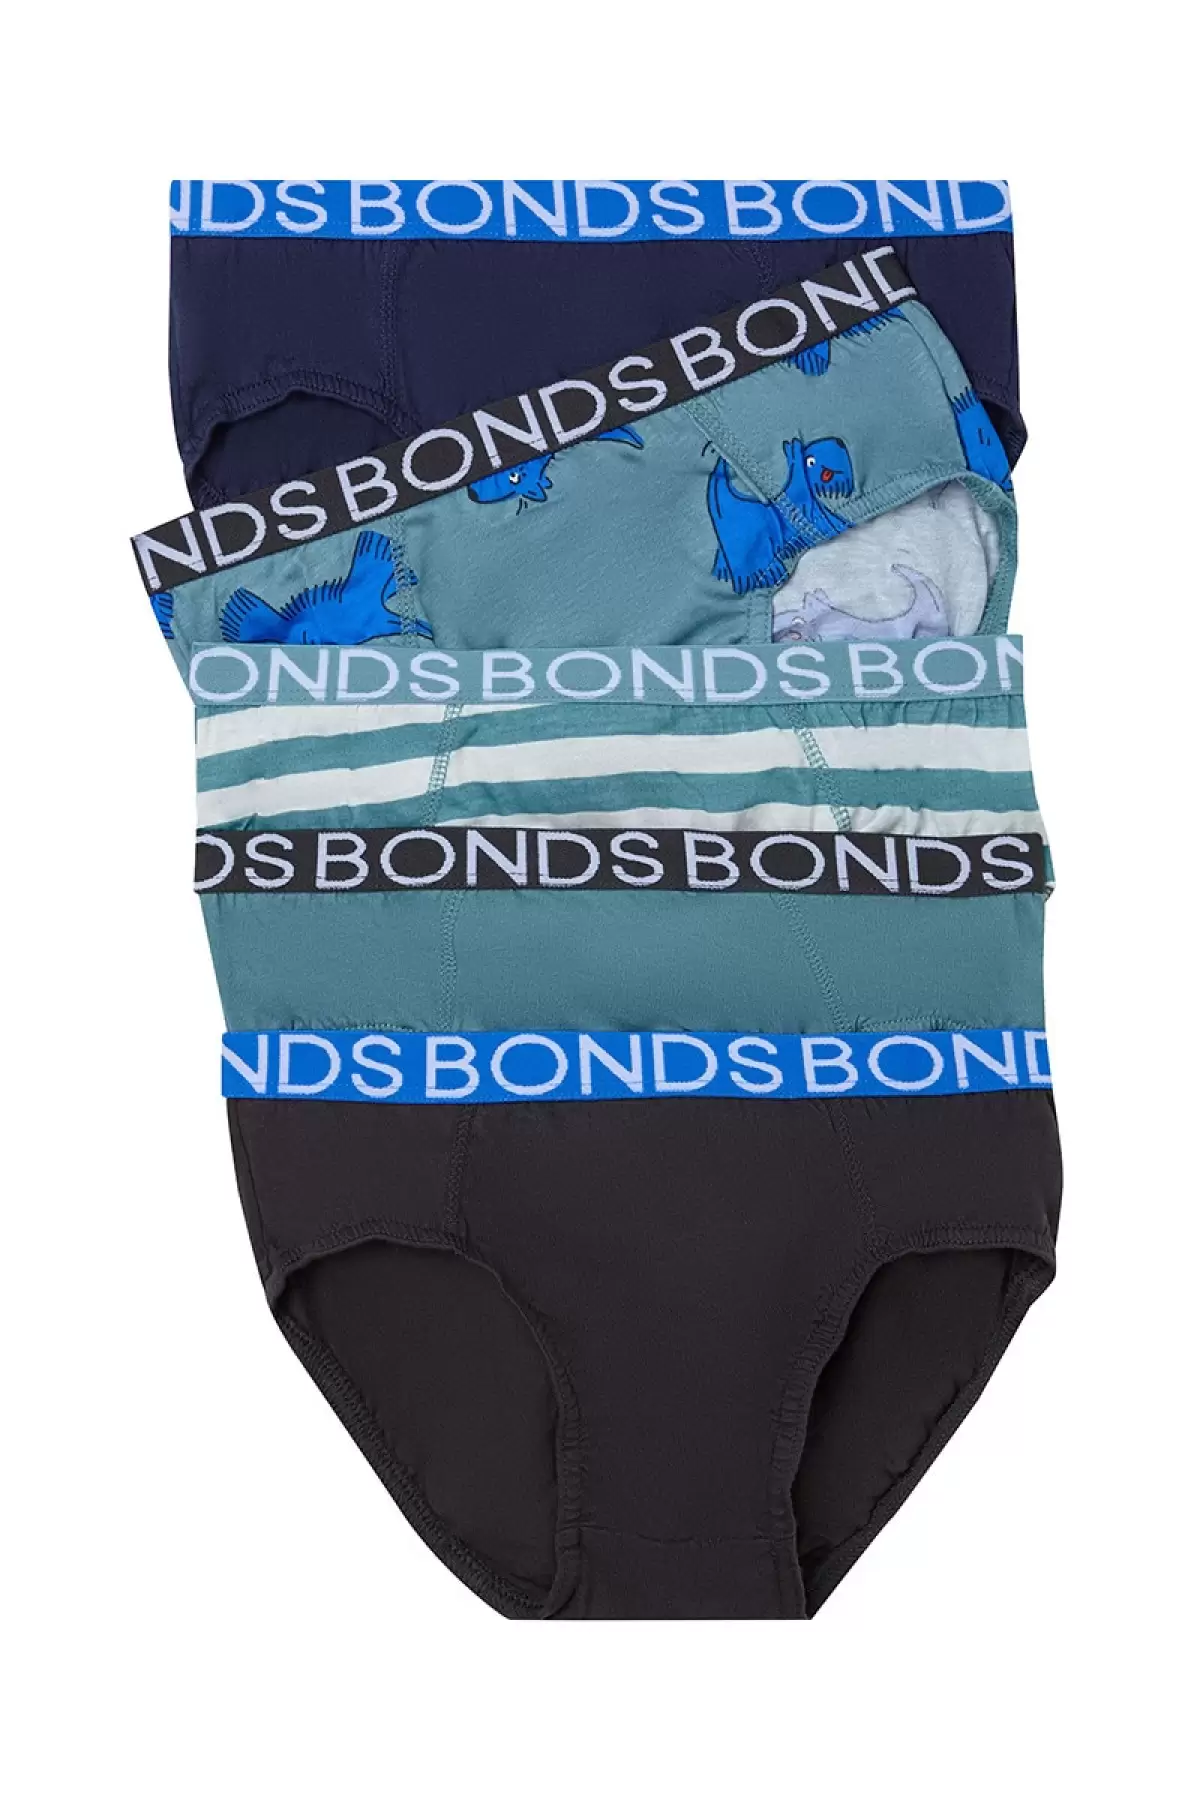 Bonds boys briefs